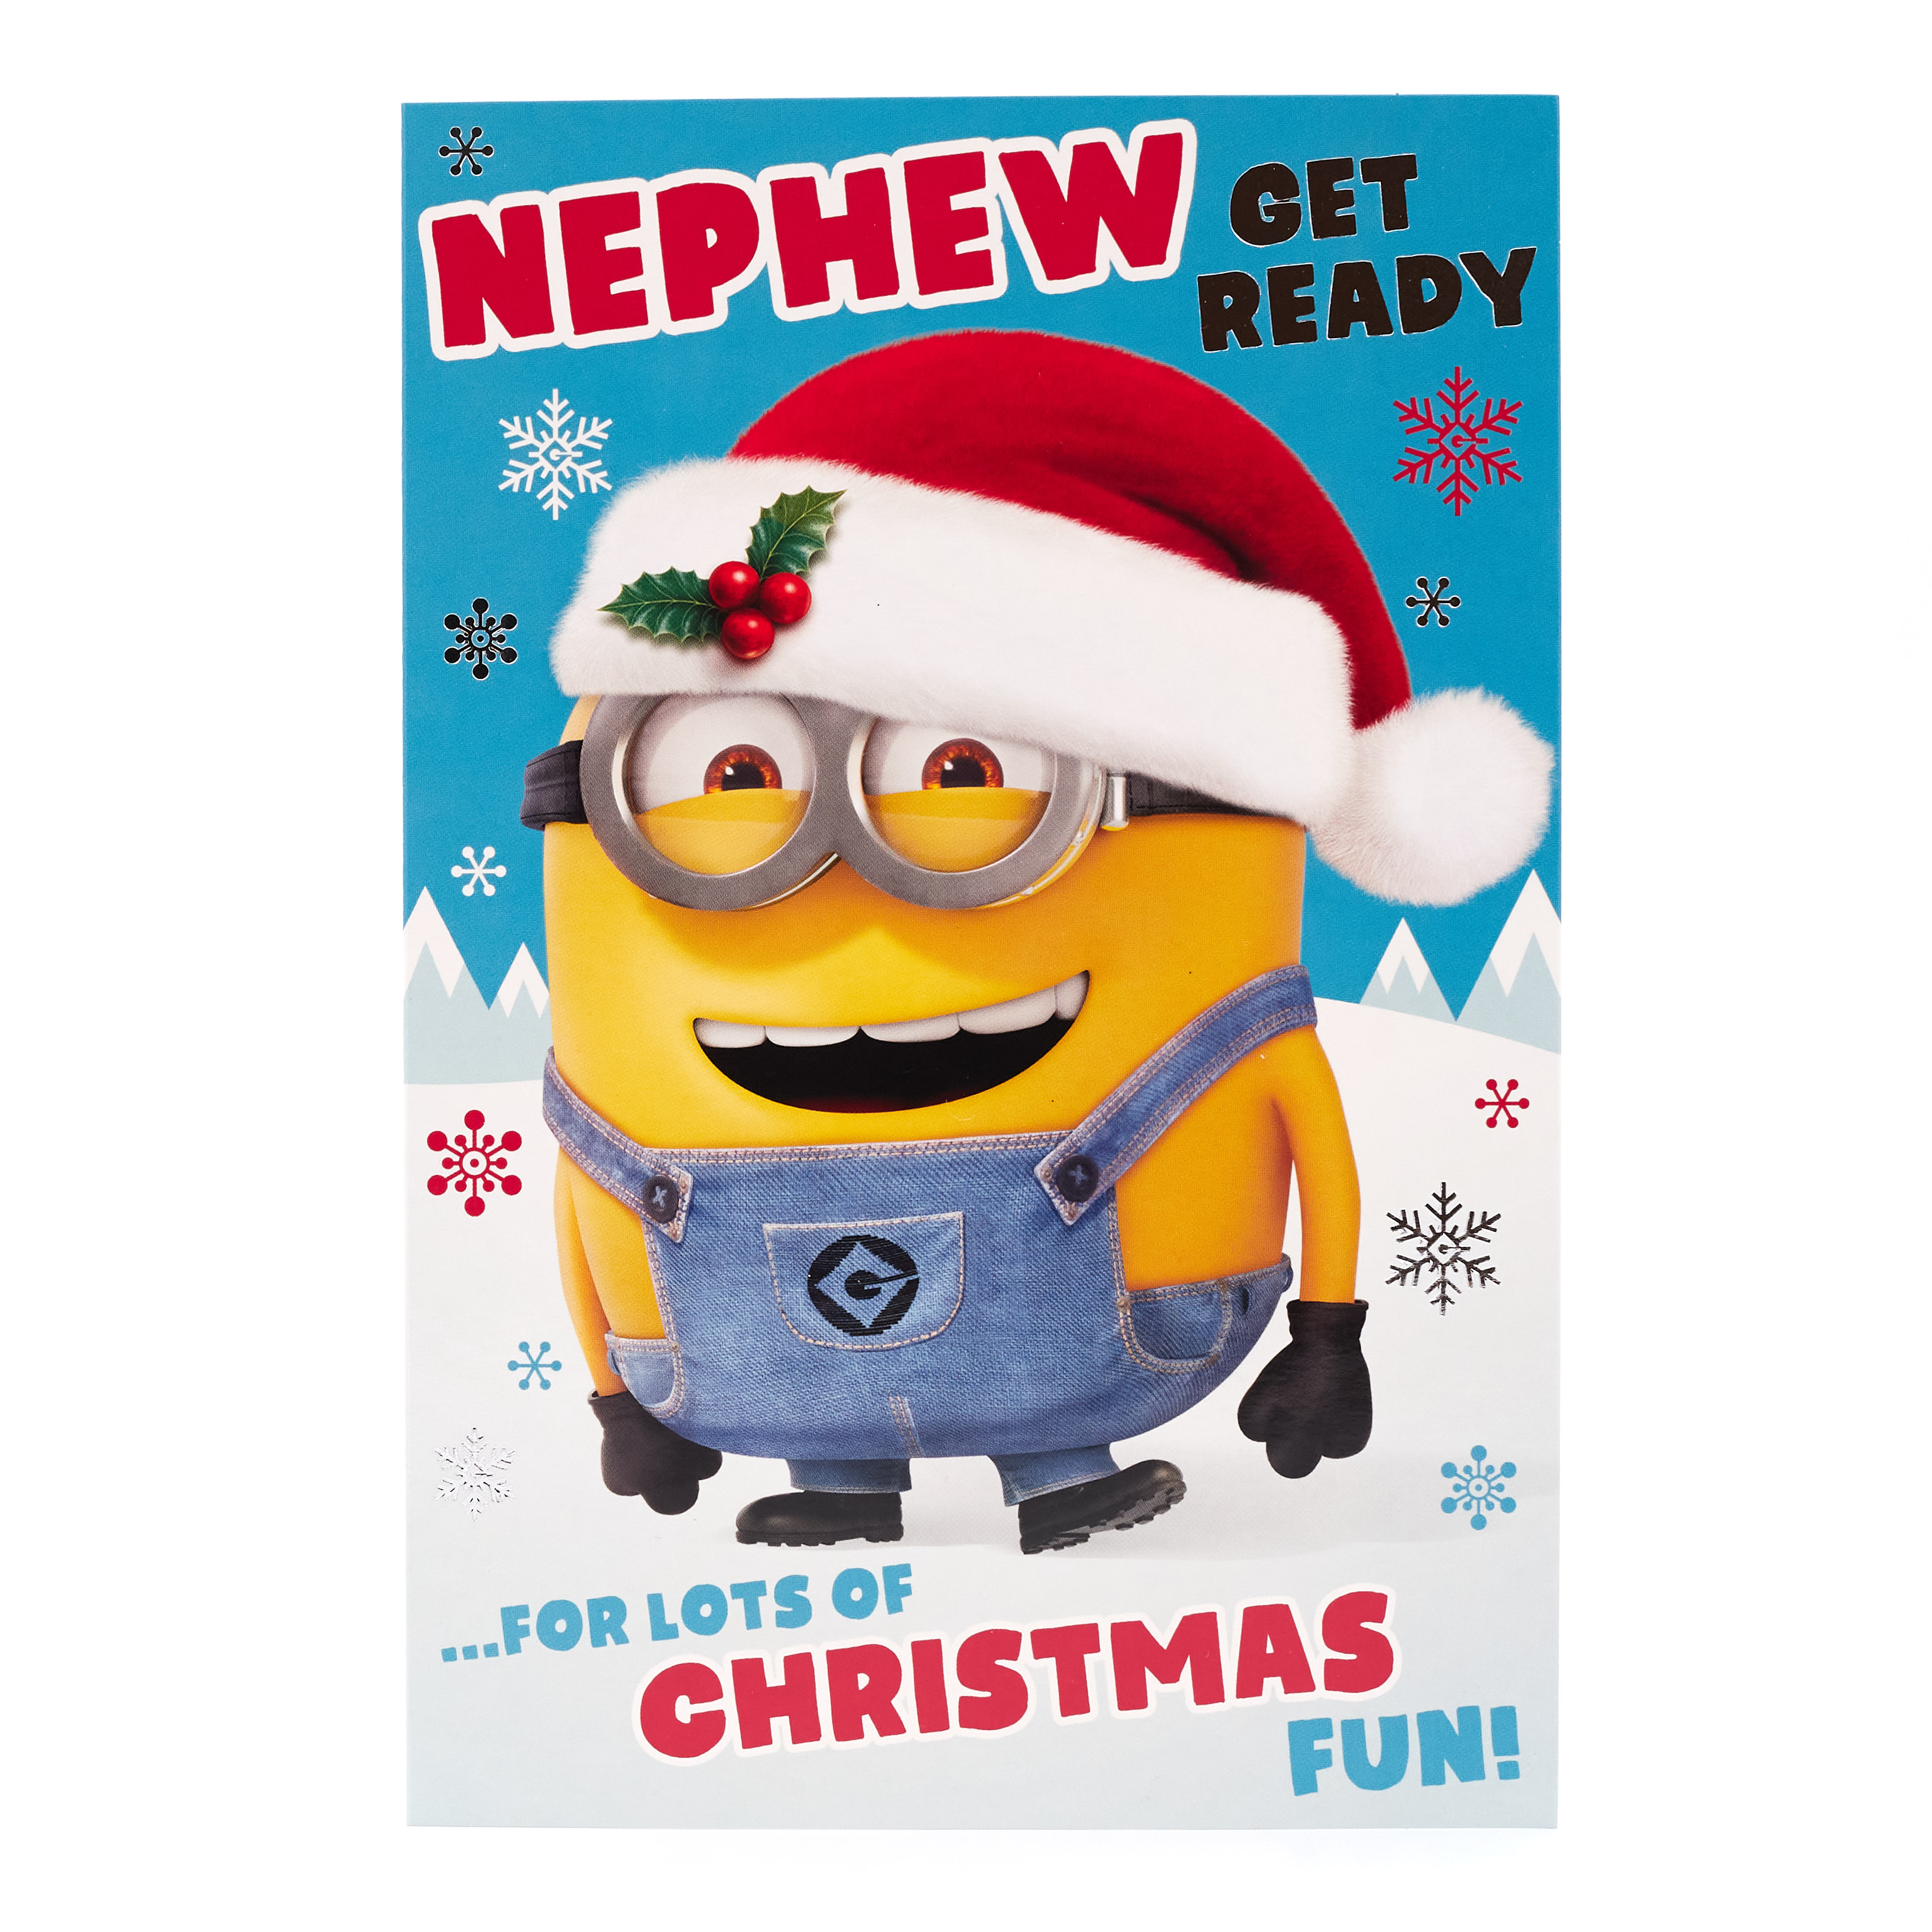 Minion Christmas Card - Nephew, Christmas Fun